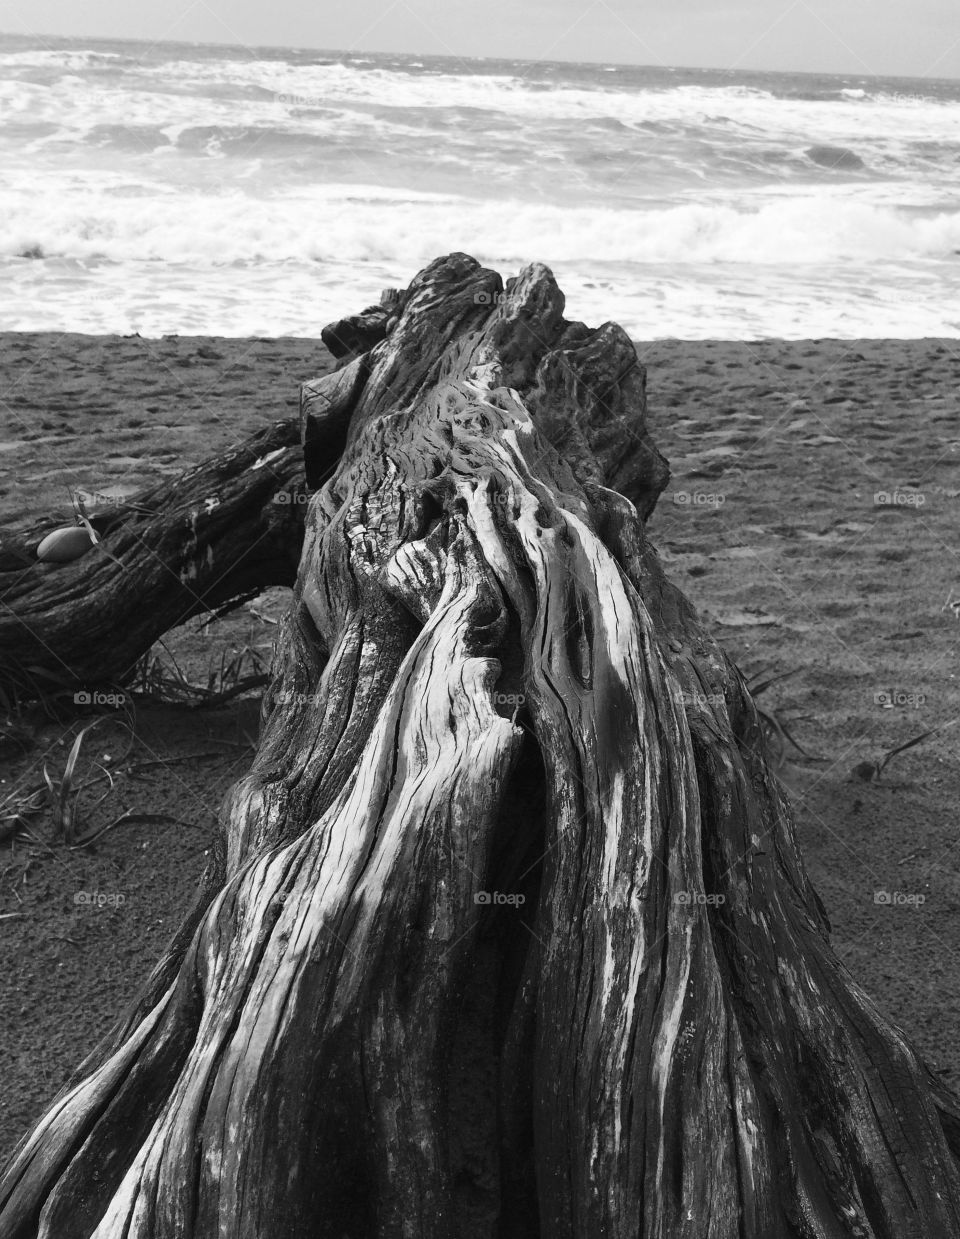 Drift wood on the Beach